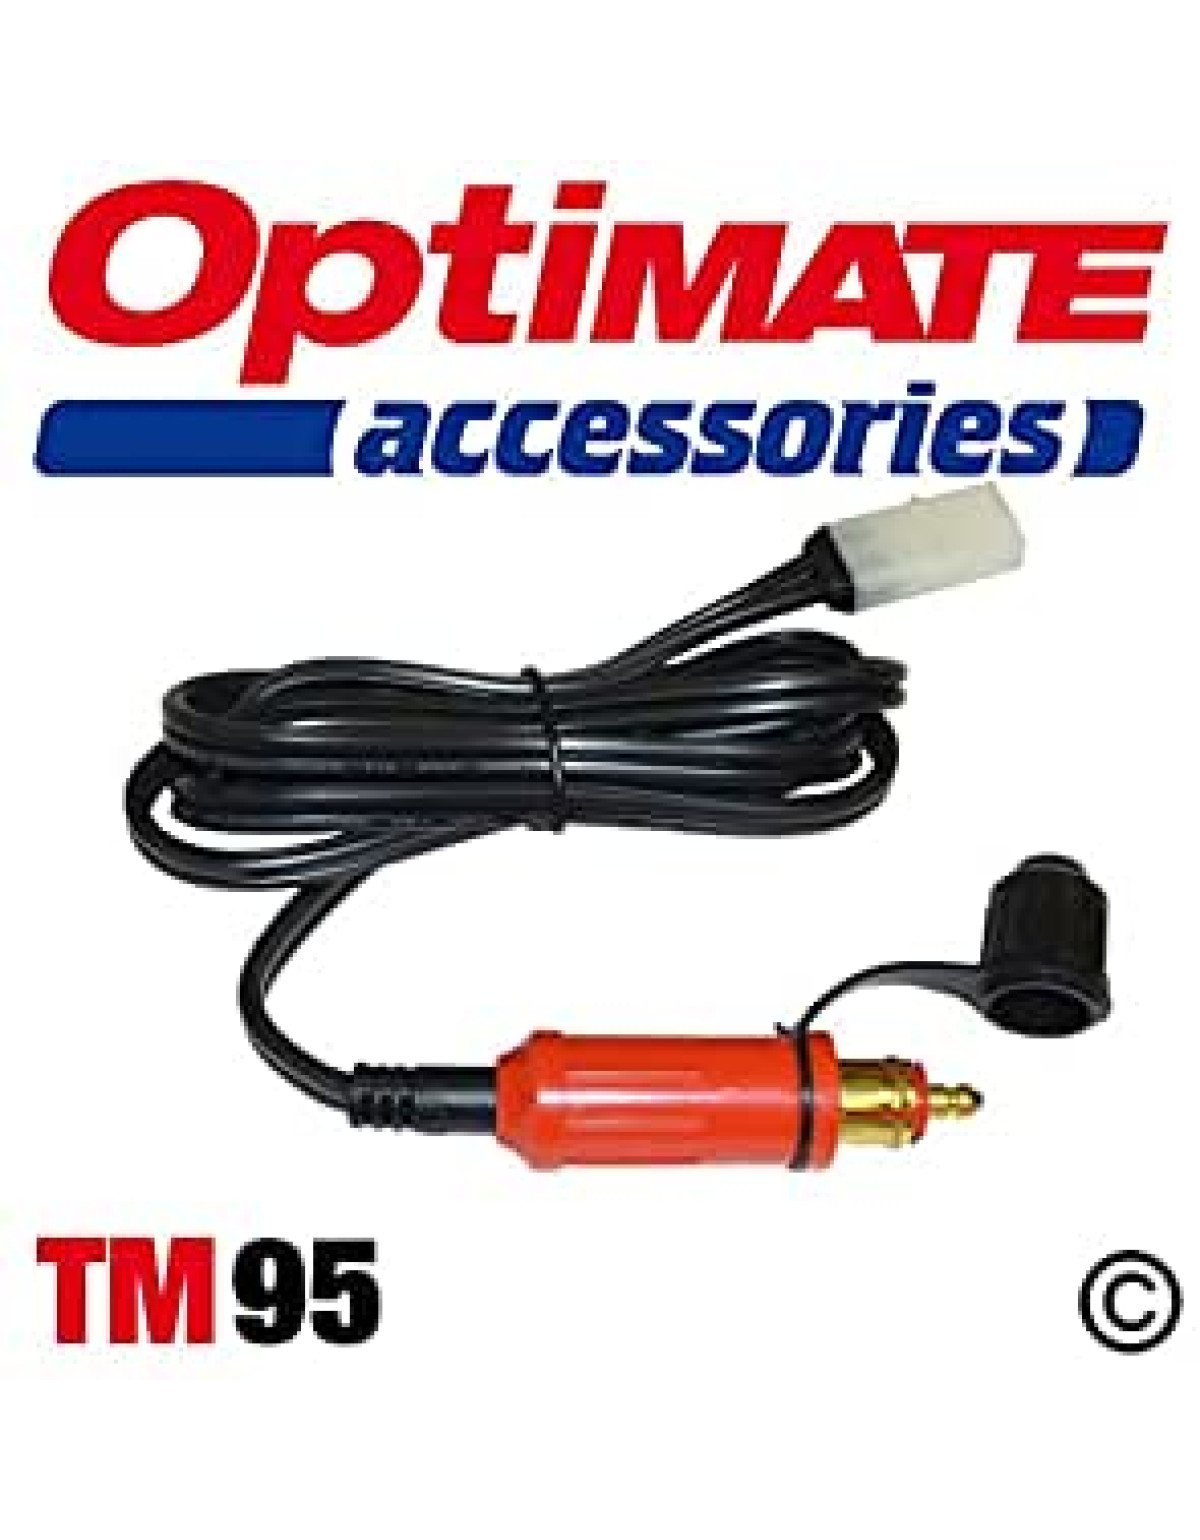 Câble chargeur de batterie Pour AccuMate 612, OptiMate III